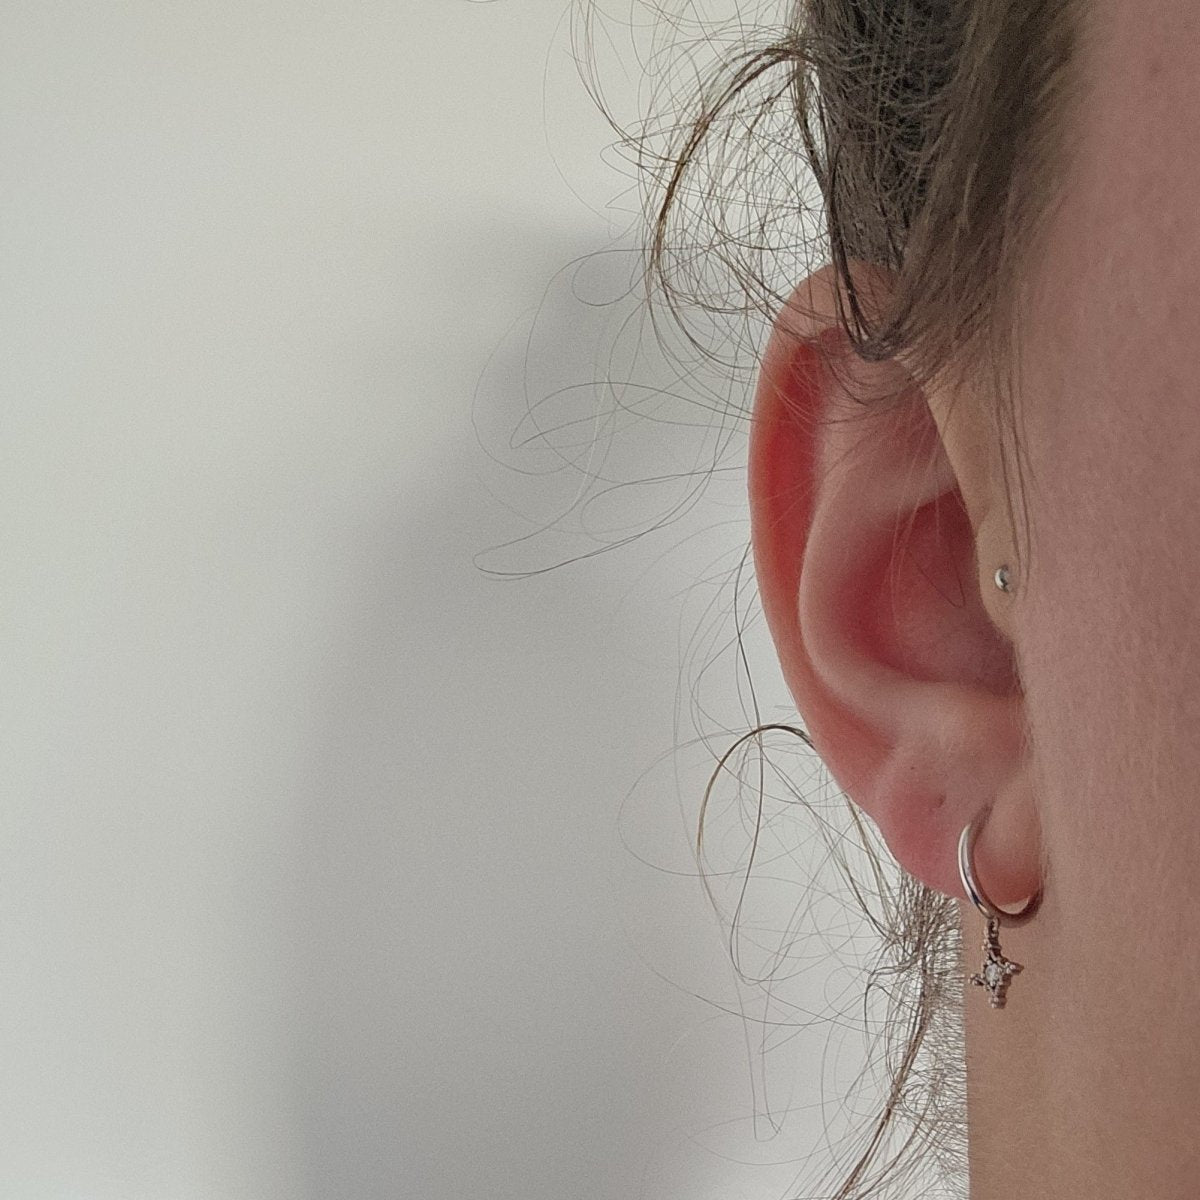 Boucles d’oreilles or blanc mini créoles avec diamants Stone Paris - Castafiore